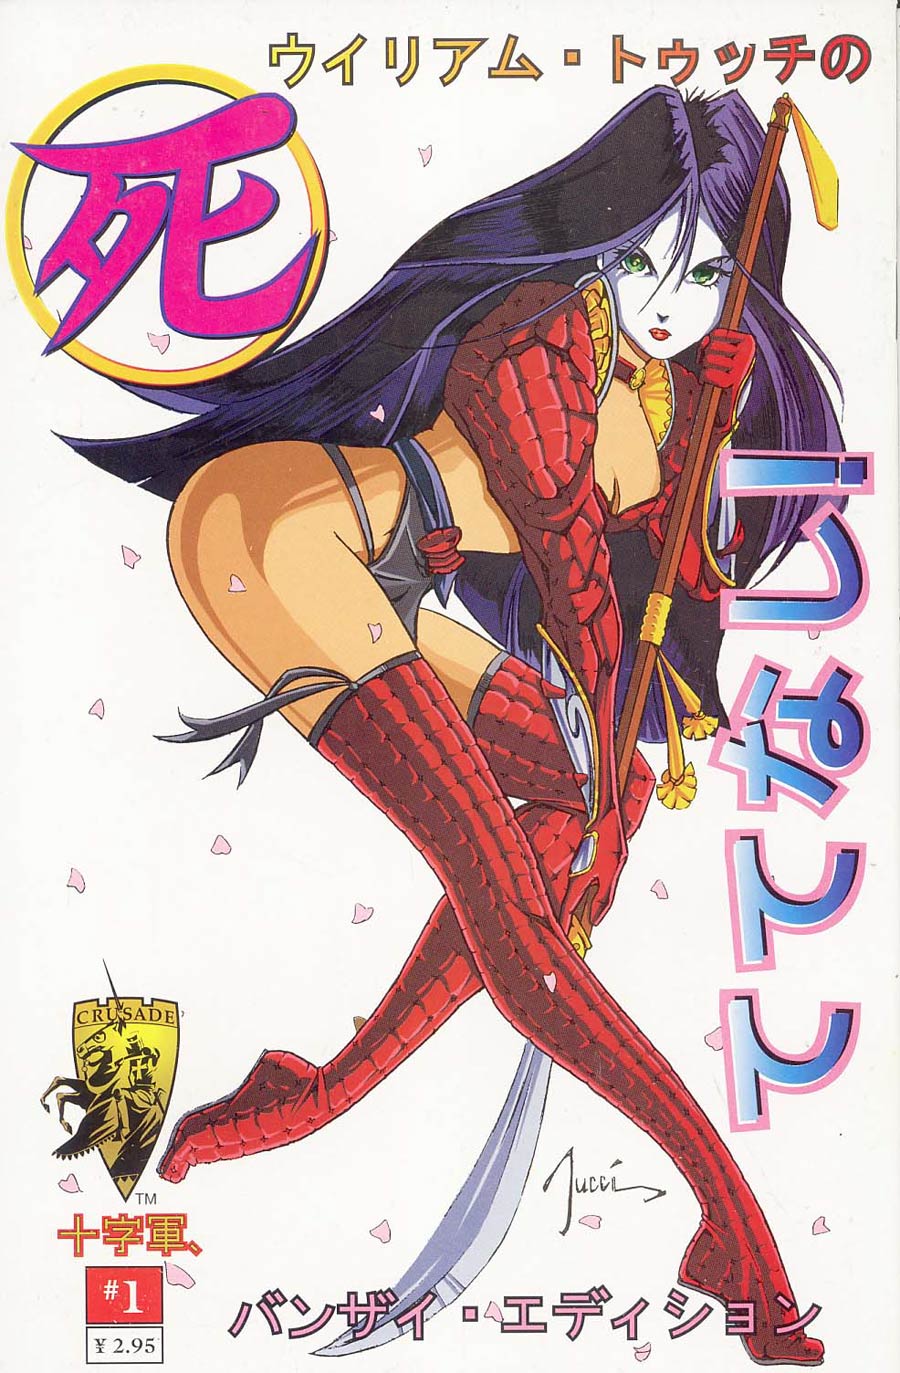 Manga Shi Shiseiji #1 Billy Tucci Cover